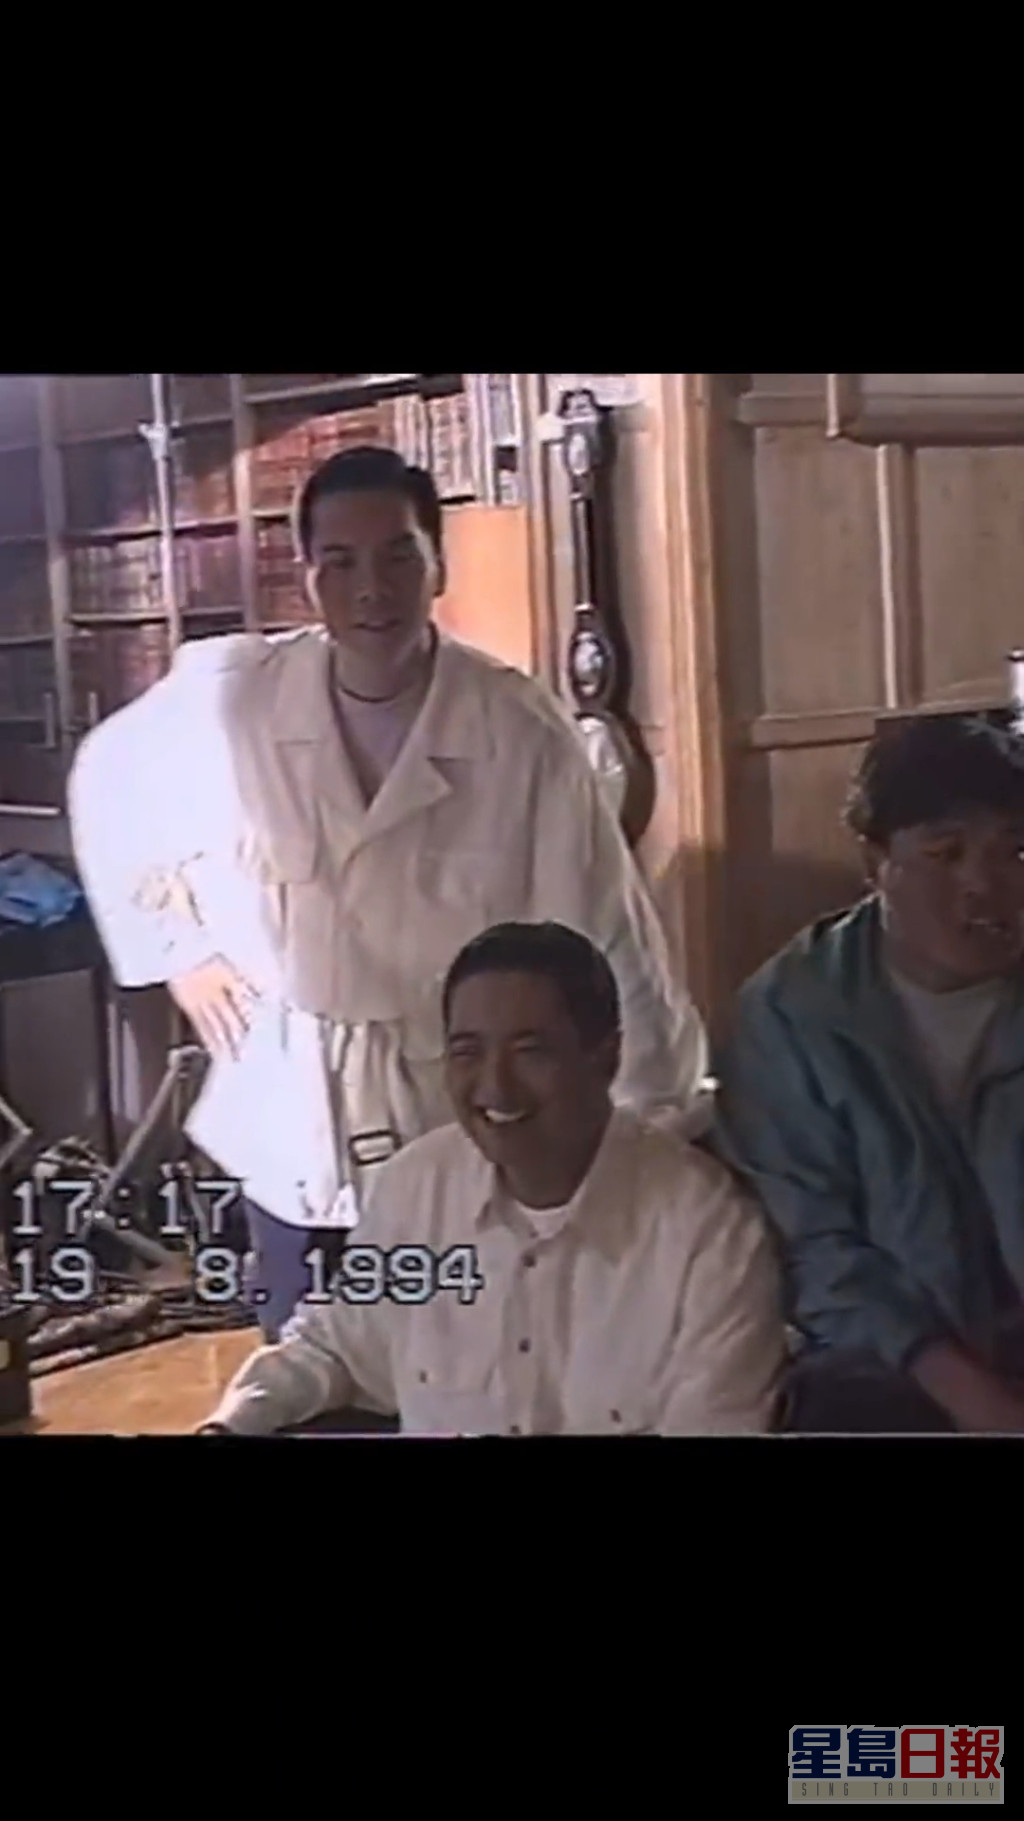 中见到日期为1994年8月19日，「高进」周润发与「龙五」向华强一同望向镜头灿笑。